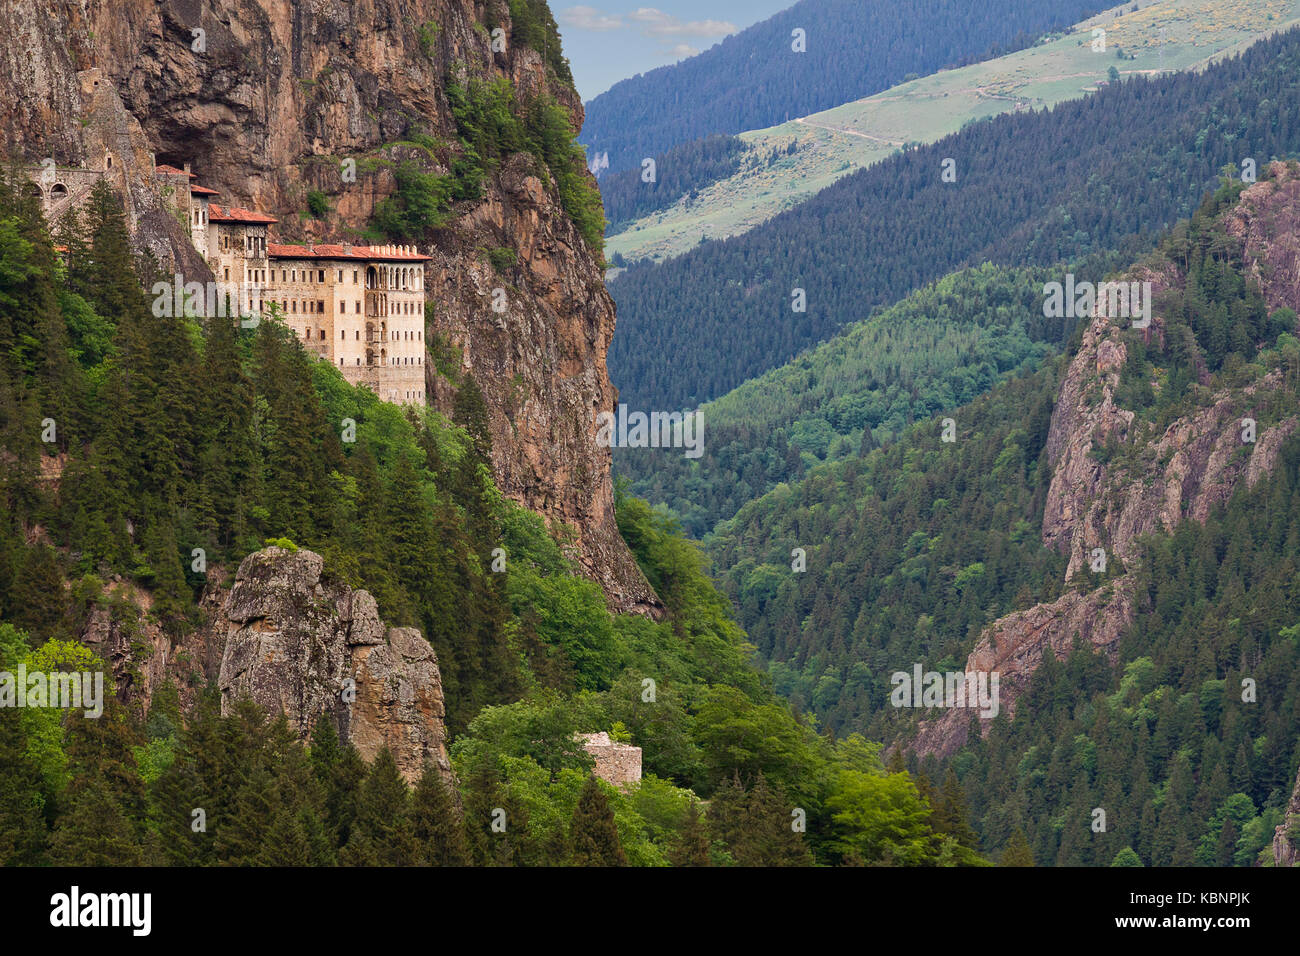 Sumela Kloster in Trabzon, Türkei. Griechisch-orthodoxe Kloster Sumela wurde im 4. Jahrhundert gegründet. Stockfoto